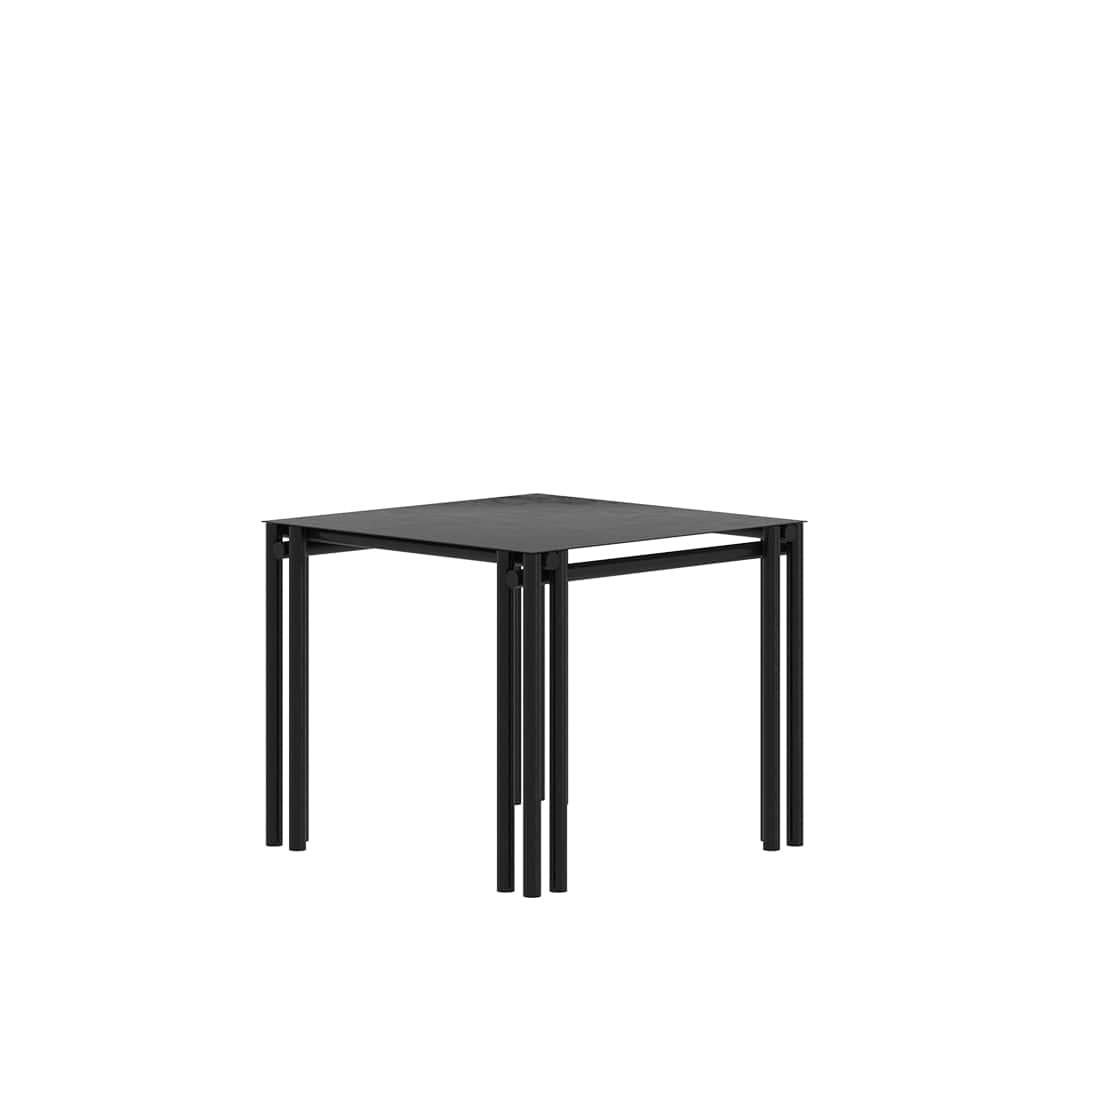 Der Dolmen Square Dining Table ist ein röhrenförmiger Tisch, der sowohl für den Innen- als auch für den Außenbereich geeignet ist. 
Er wird in Handarbeit aus galvanisiertem Aluminium gefertigt und mit einer matten elektrostatischen Beschichtung